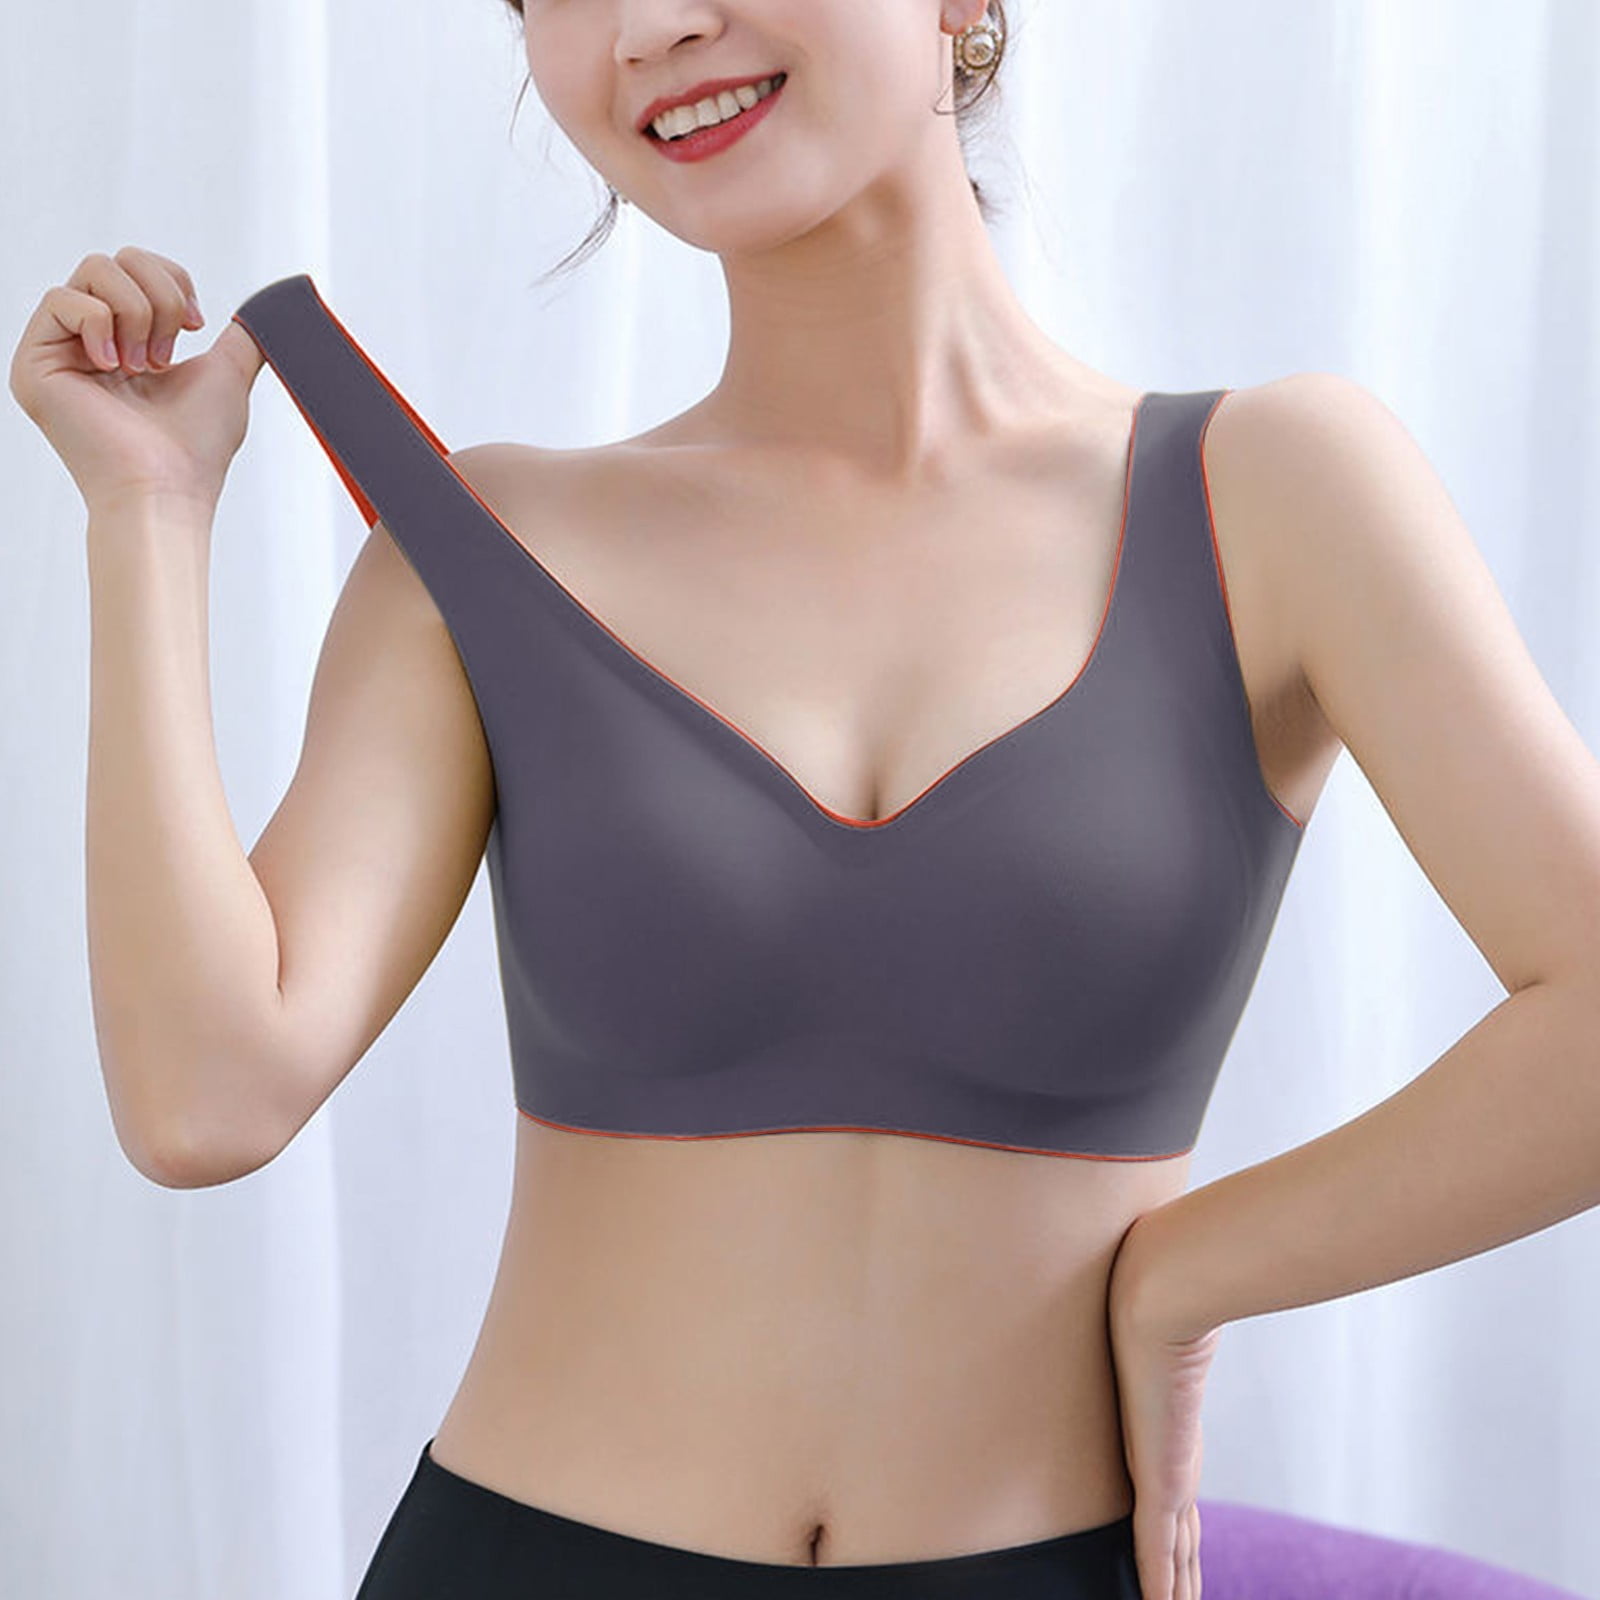 LEEy-World Sports Bras for Women Low Cut Bra Women Underwear Bralette Crop  Top Female Bra Push Up Brassiere Bra White,100 